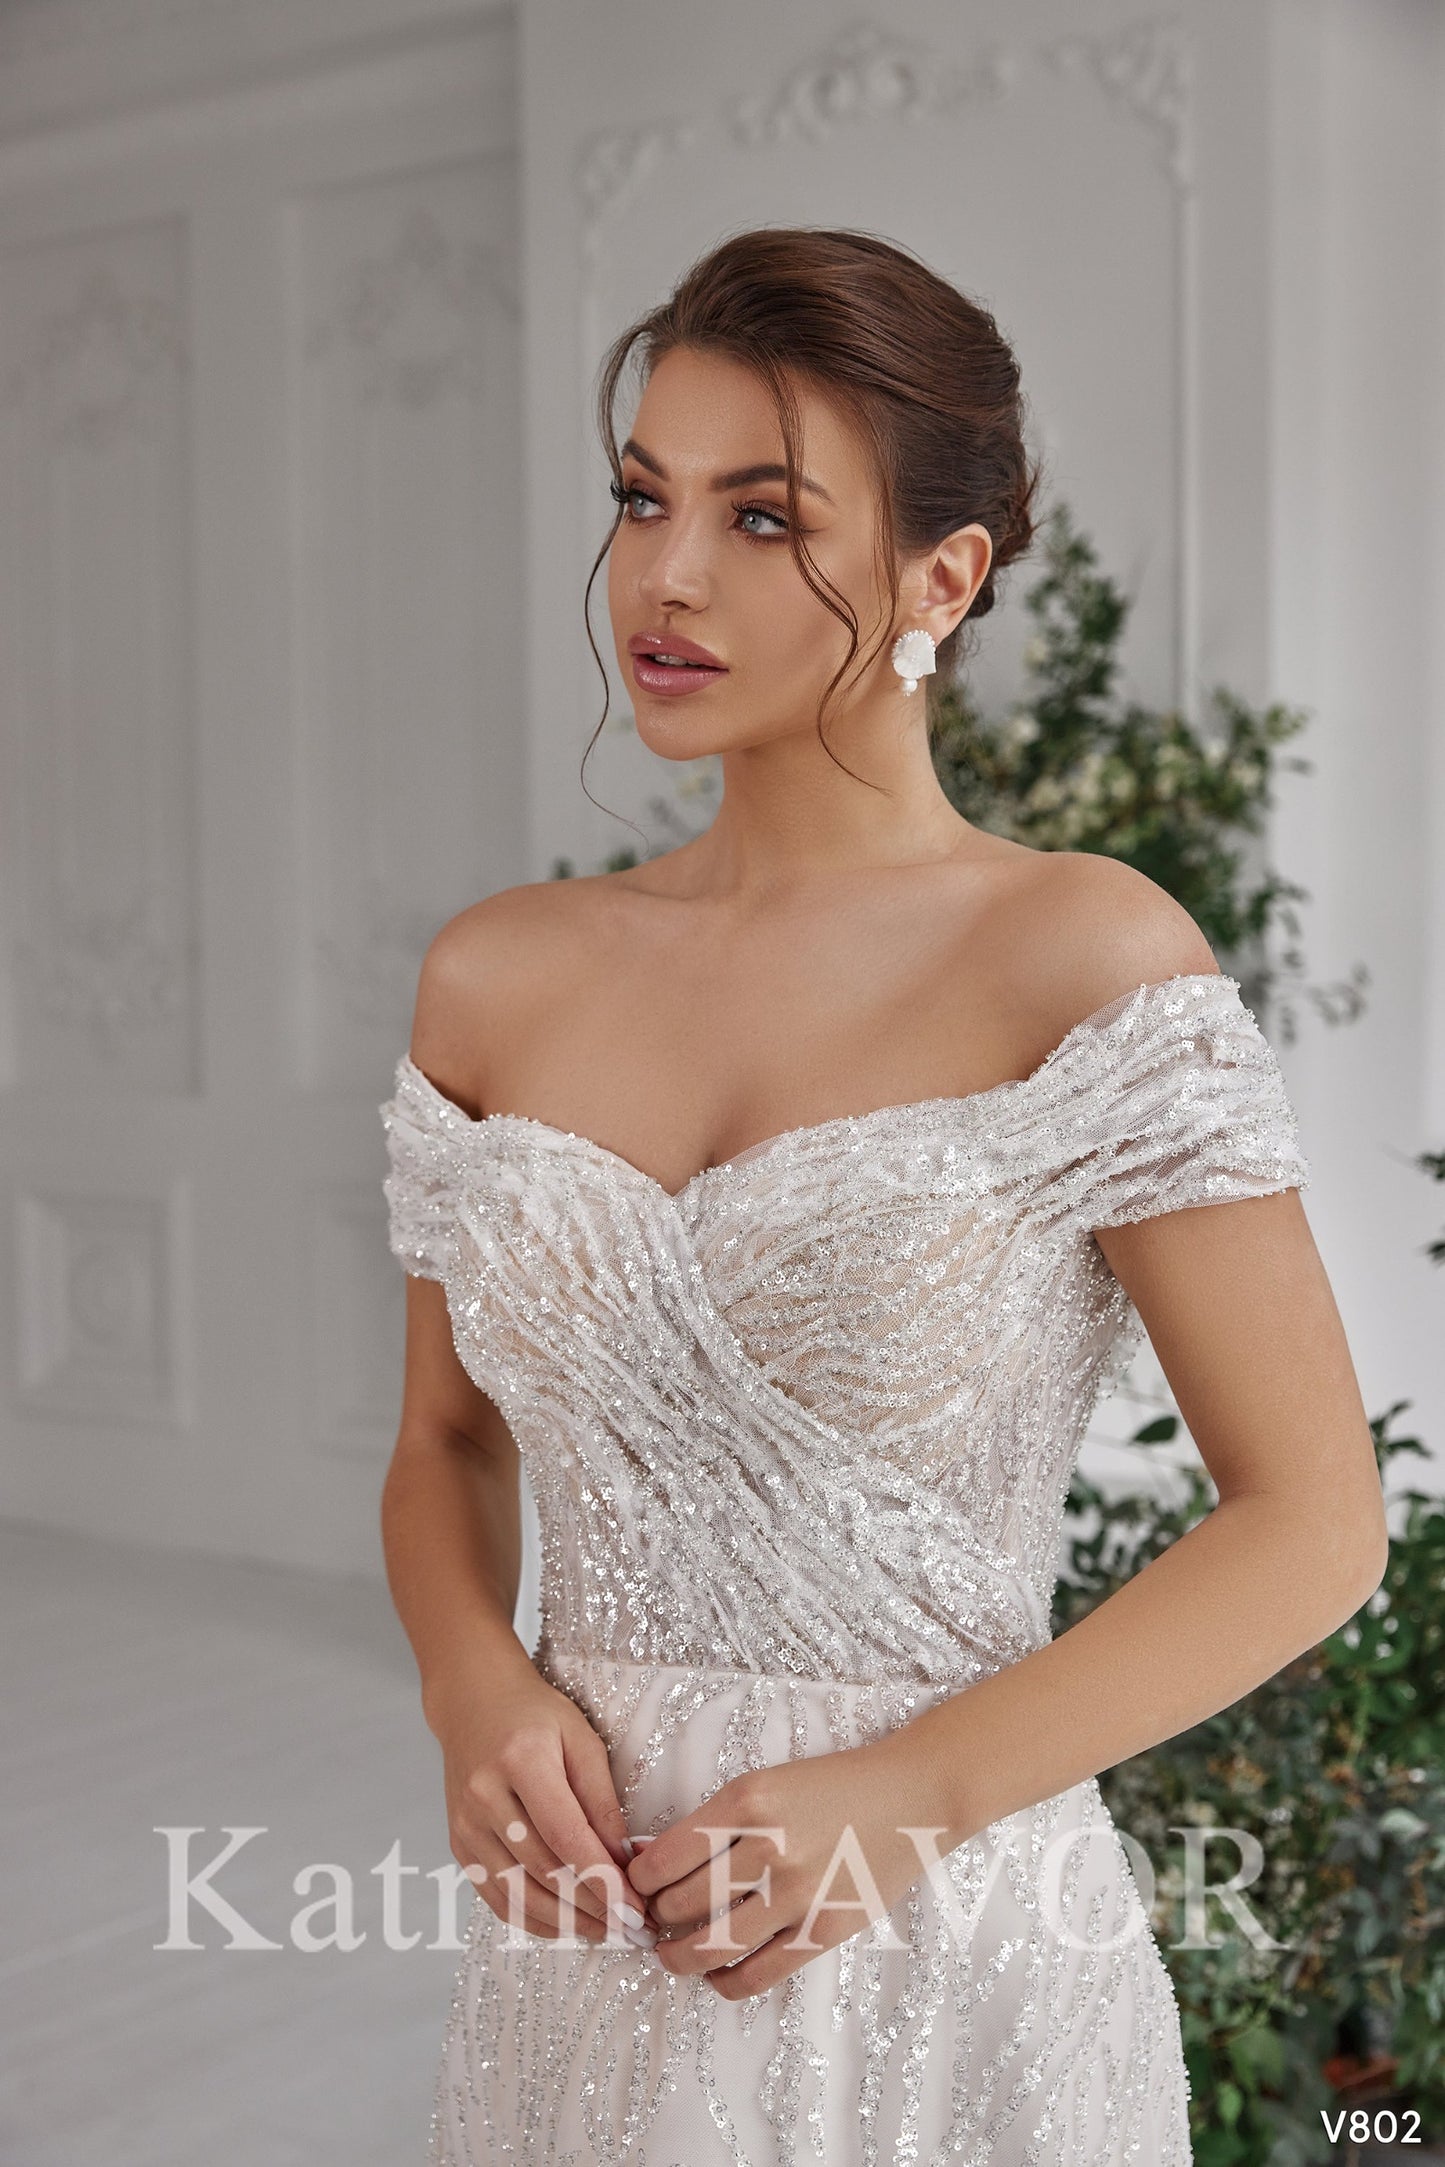 KatrinFAVORboutique-Embroidered off the shoulder blush wedding dress